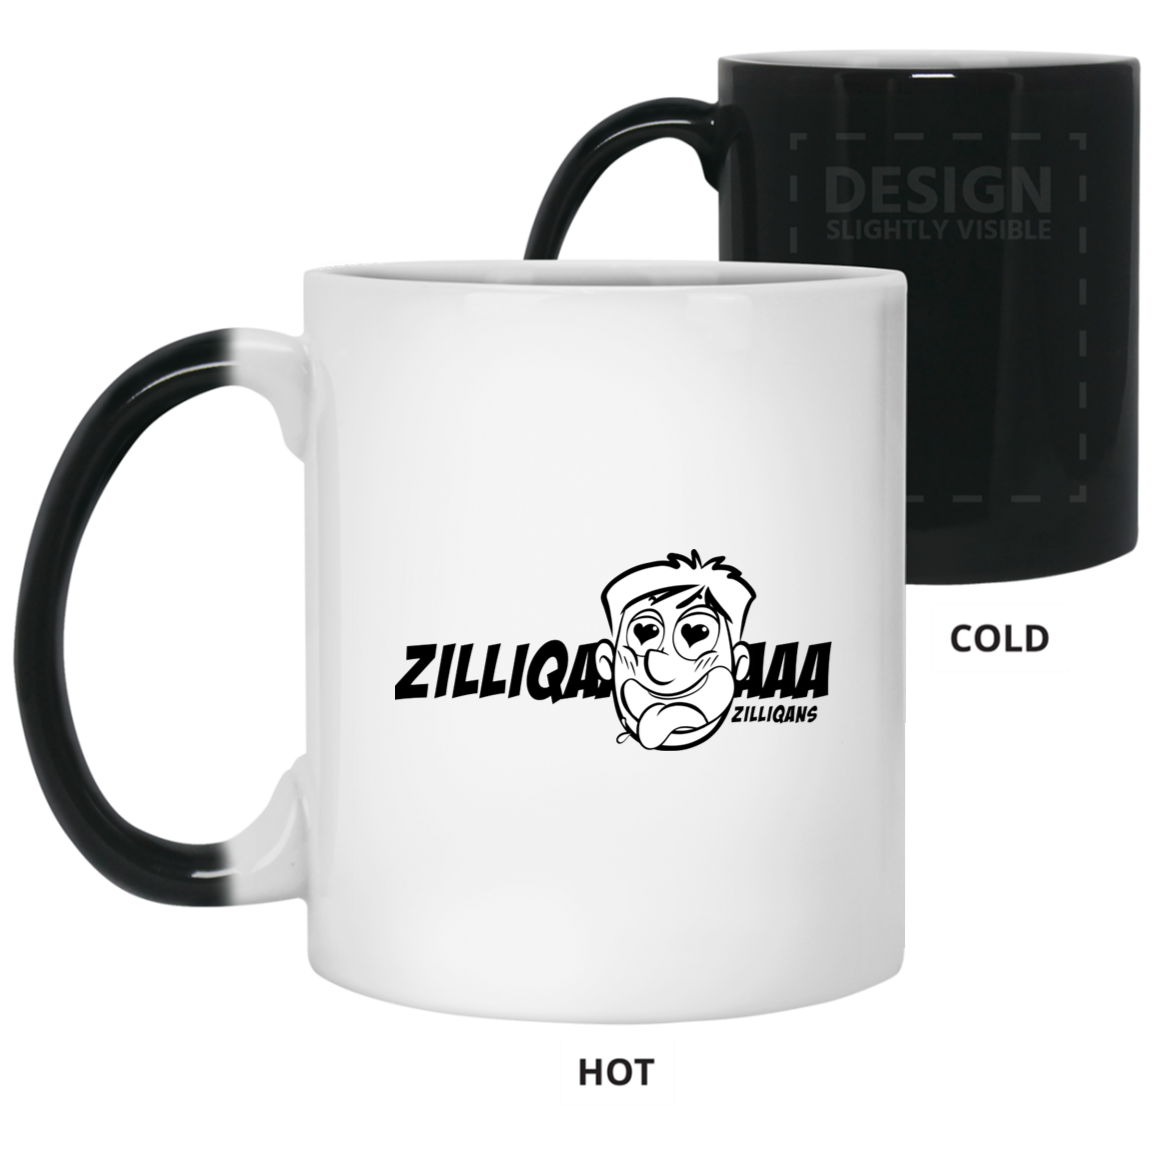 Zilliqans - 11 oz. Mug đổi màu TCP1607 Trắng / Hàng hóa tiền điện tử chính thức một kích thước